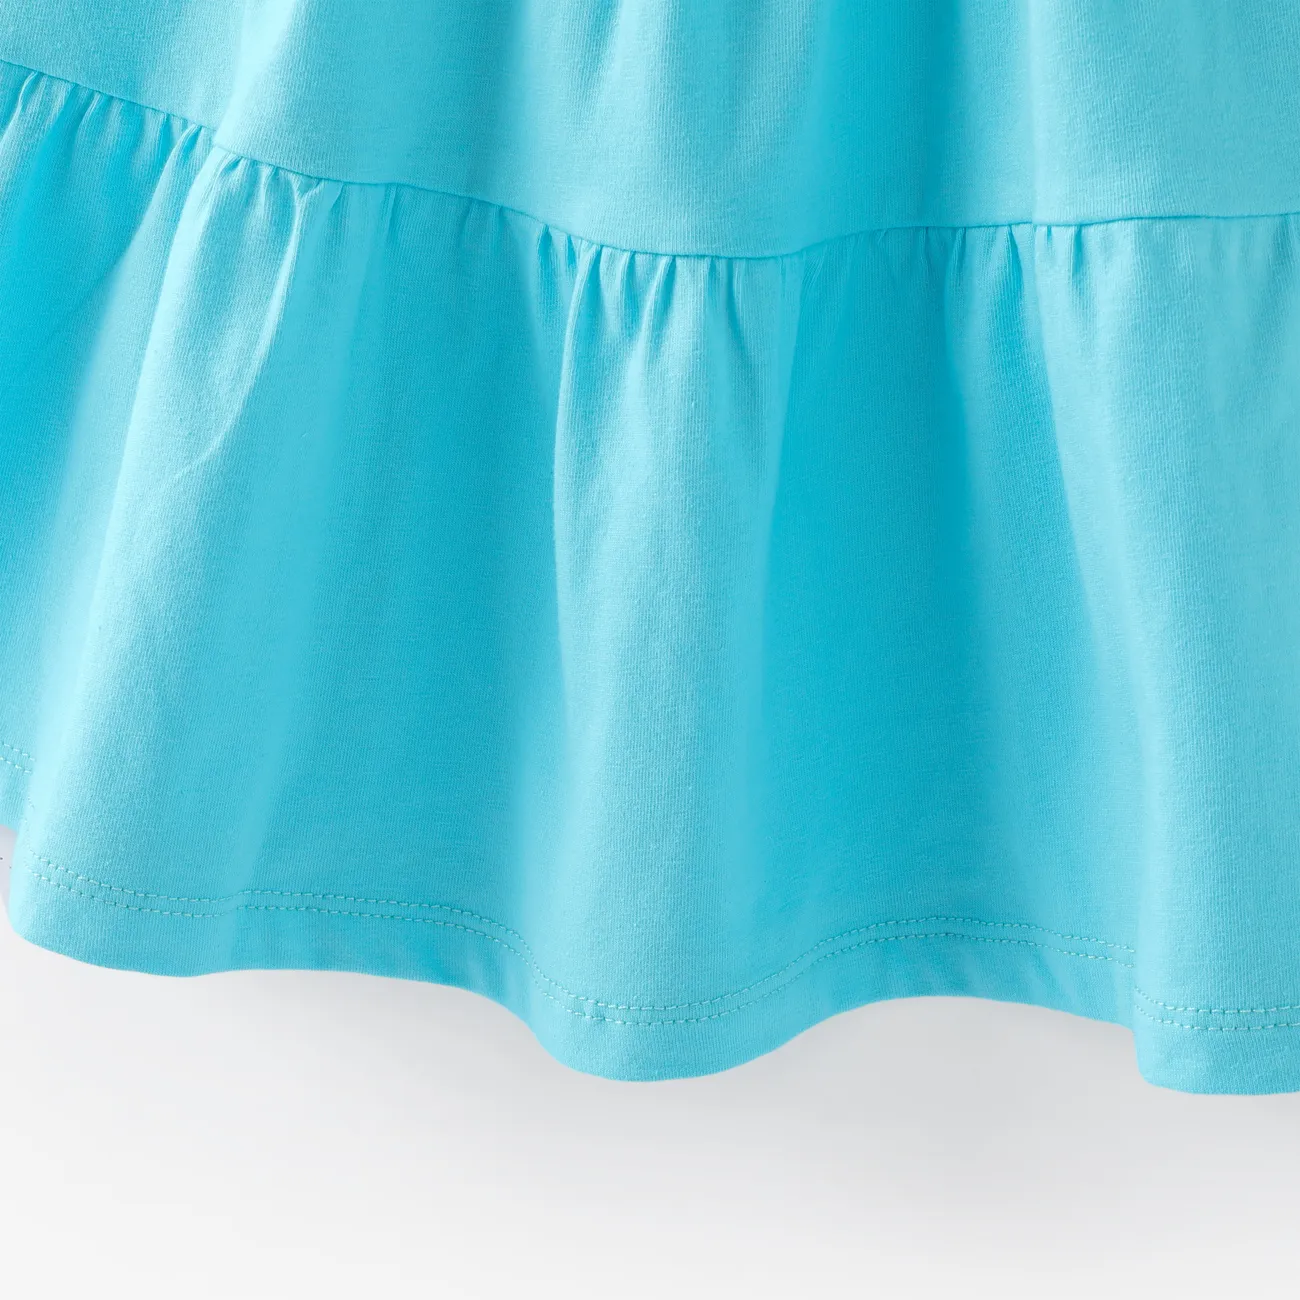 Toddler Girl Basic Solid Multilayers Cami Dress Blue big image 1